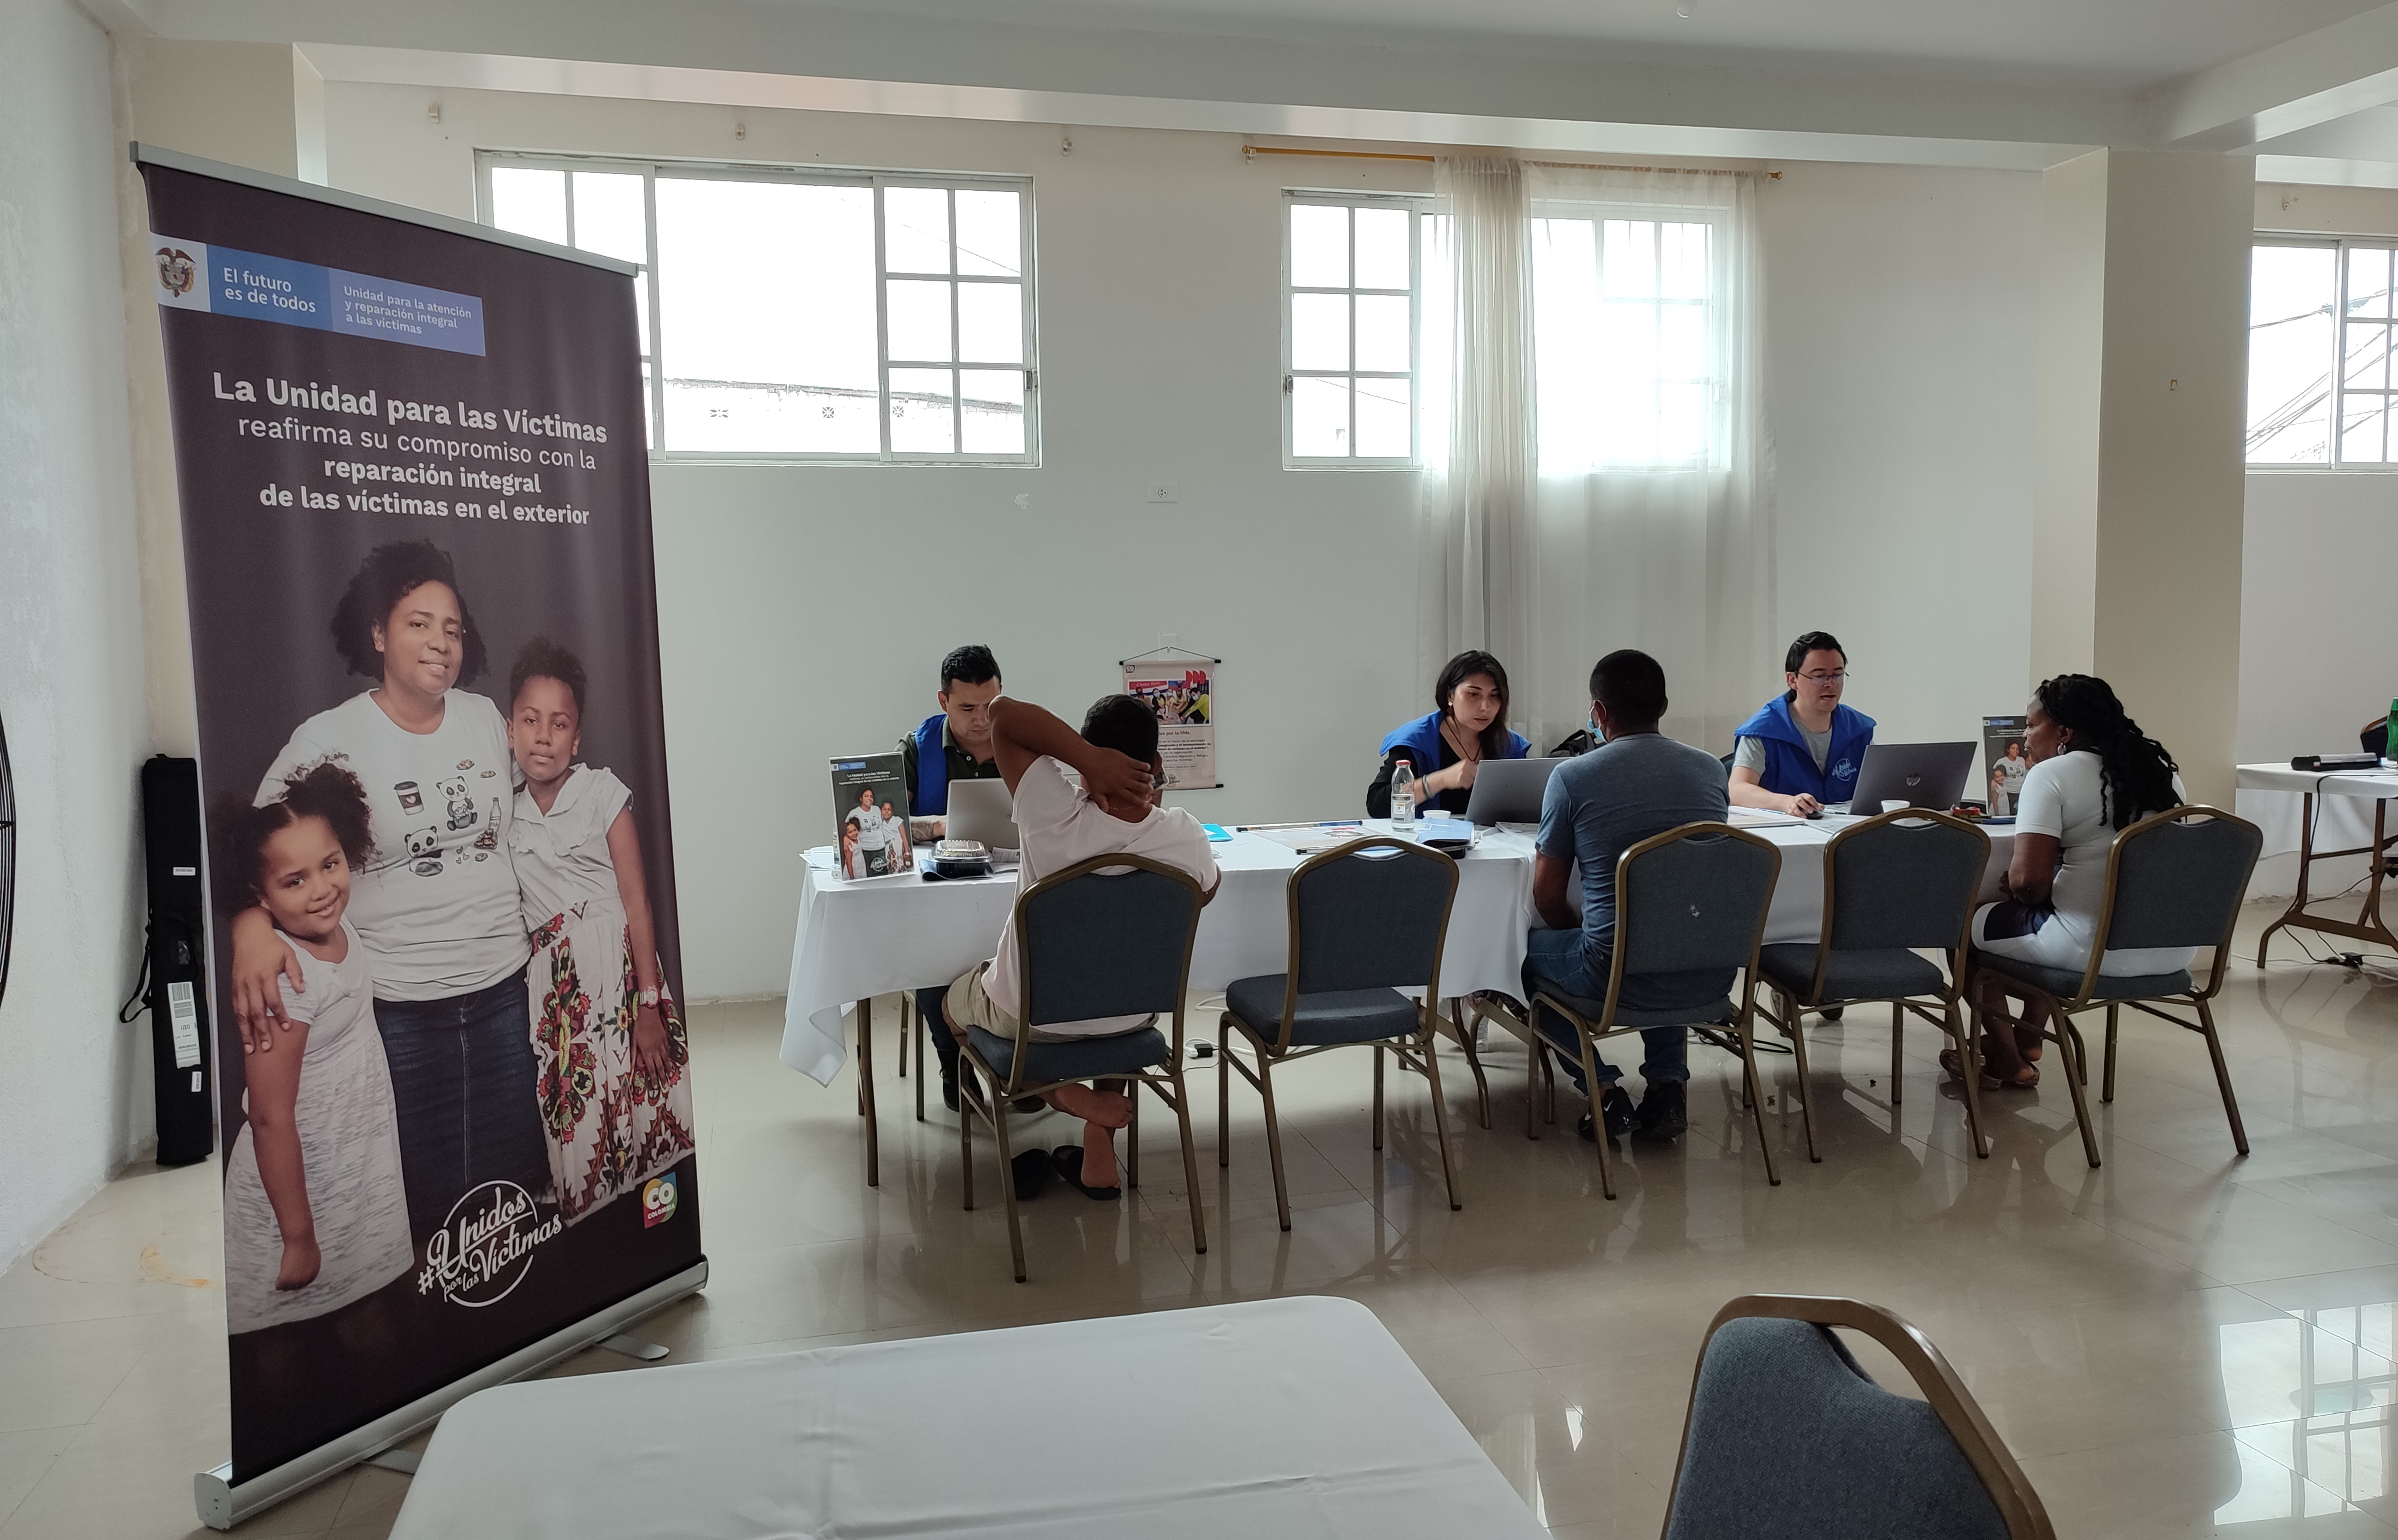 Culmina con éxito jornada interinstitucional de atención a víctimas en el exterior en San Lorenzo y Esmeraldas